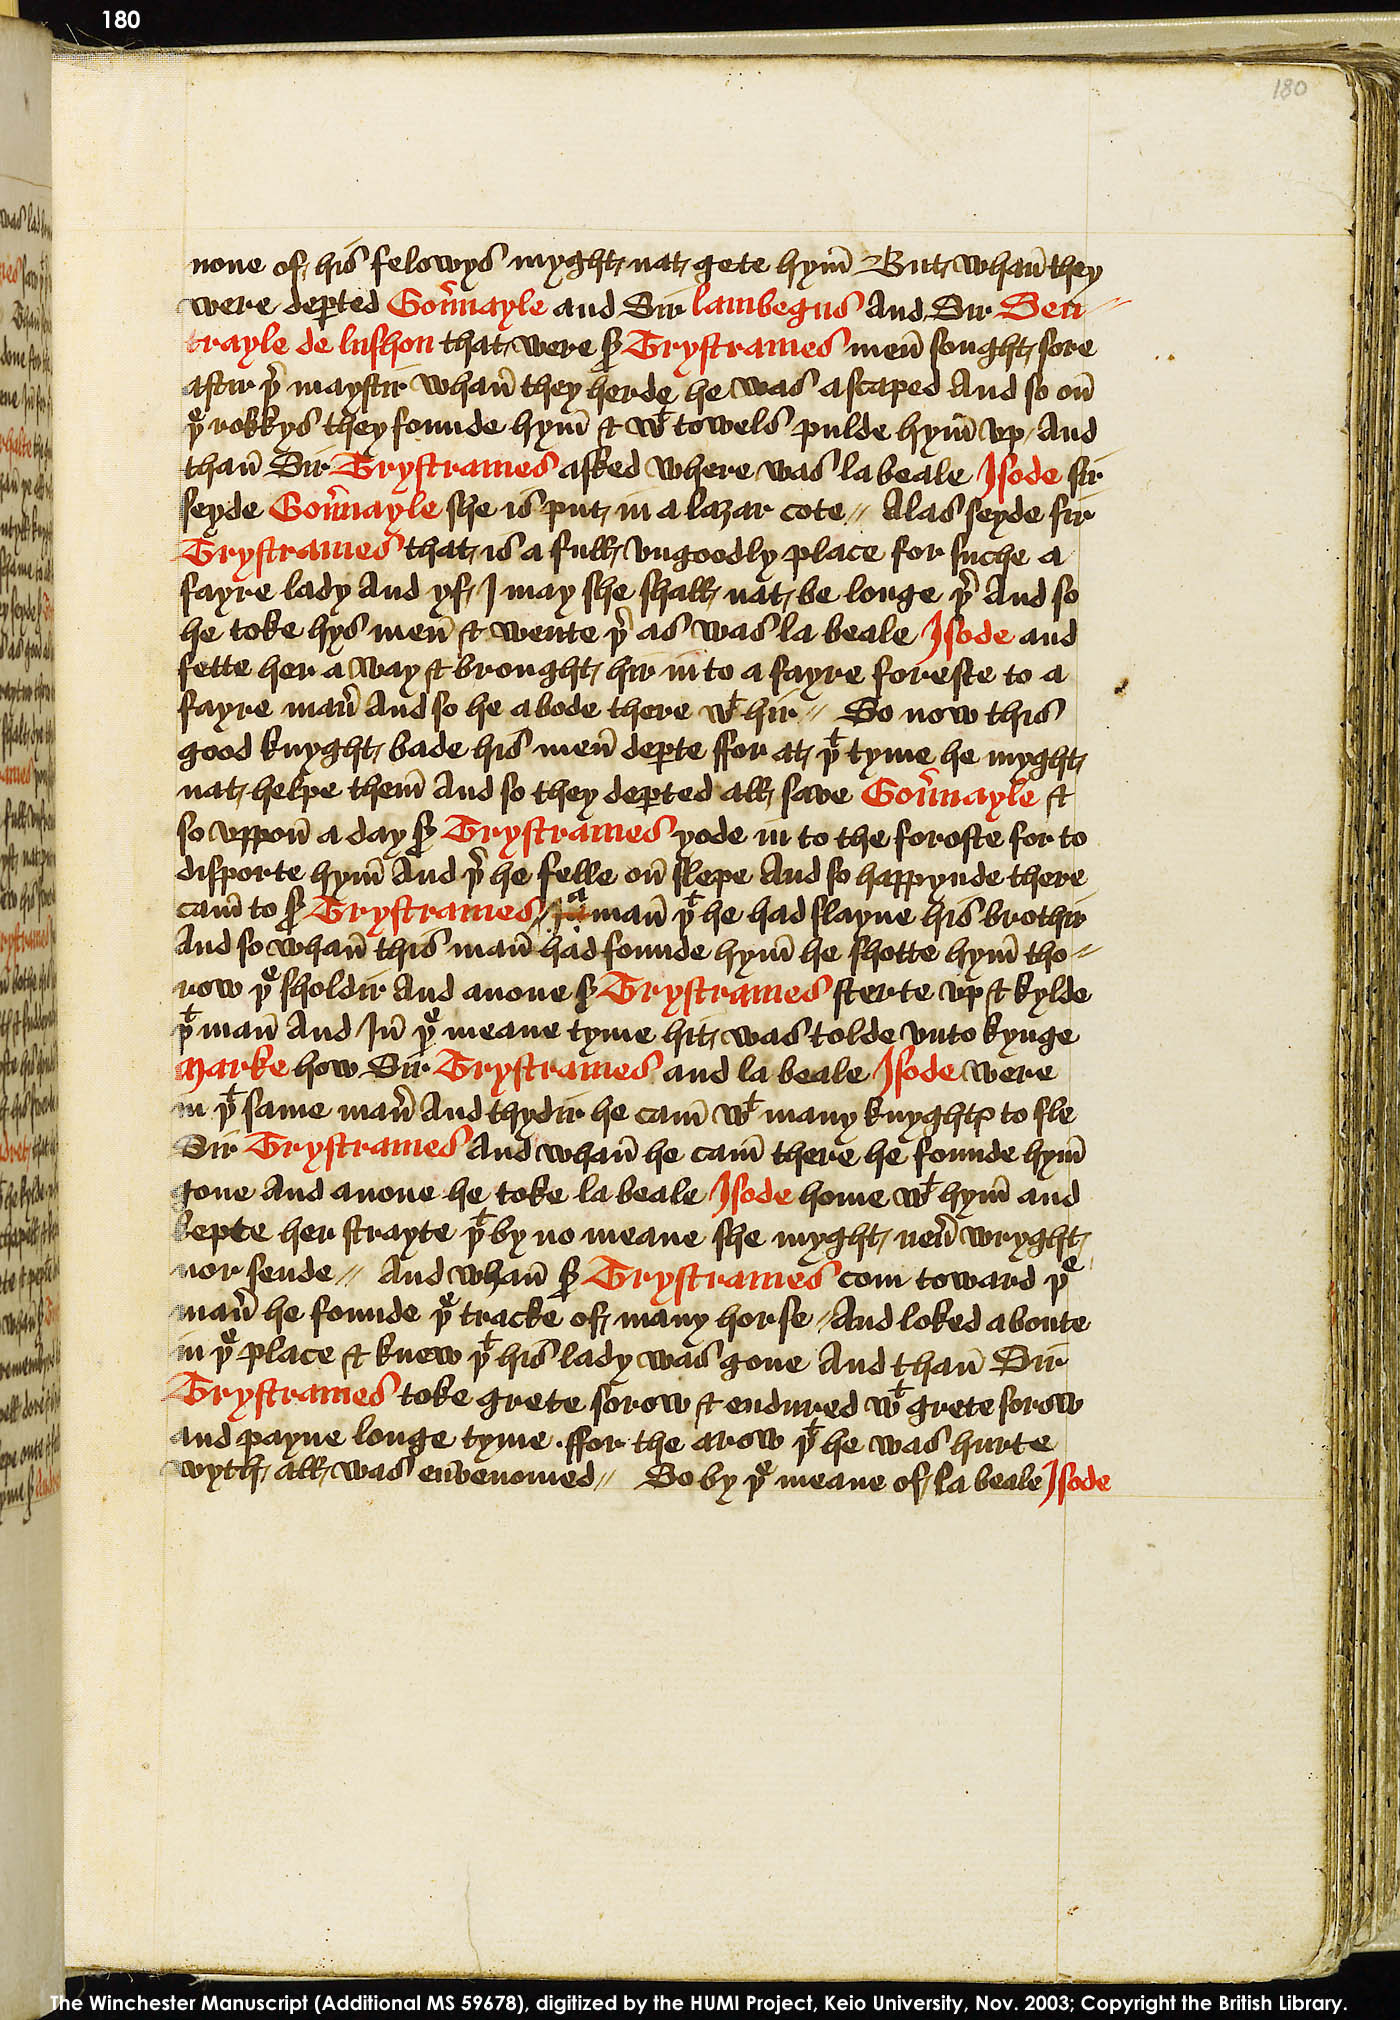 Folio 180r